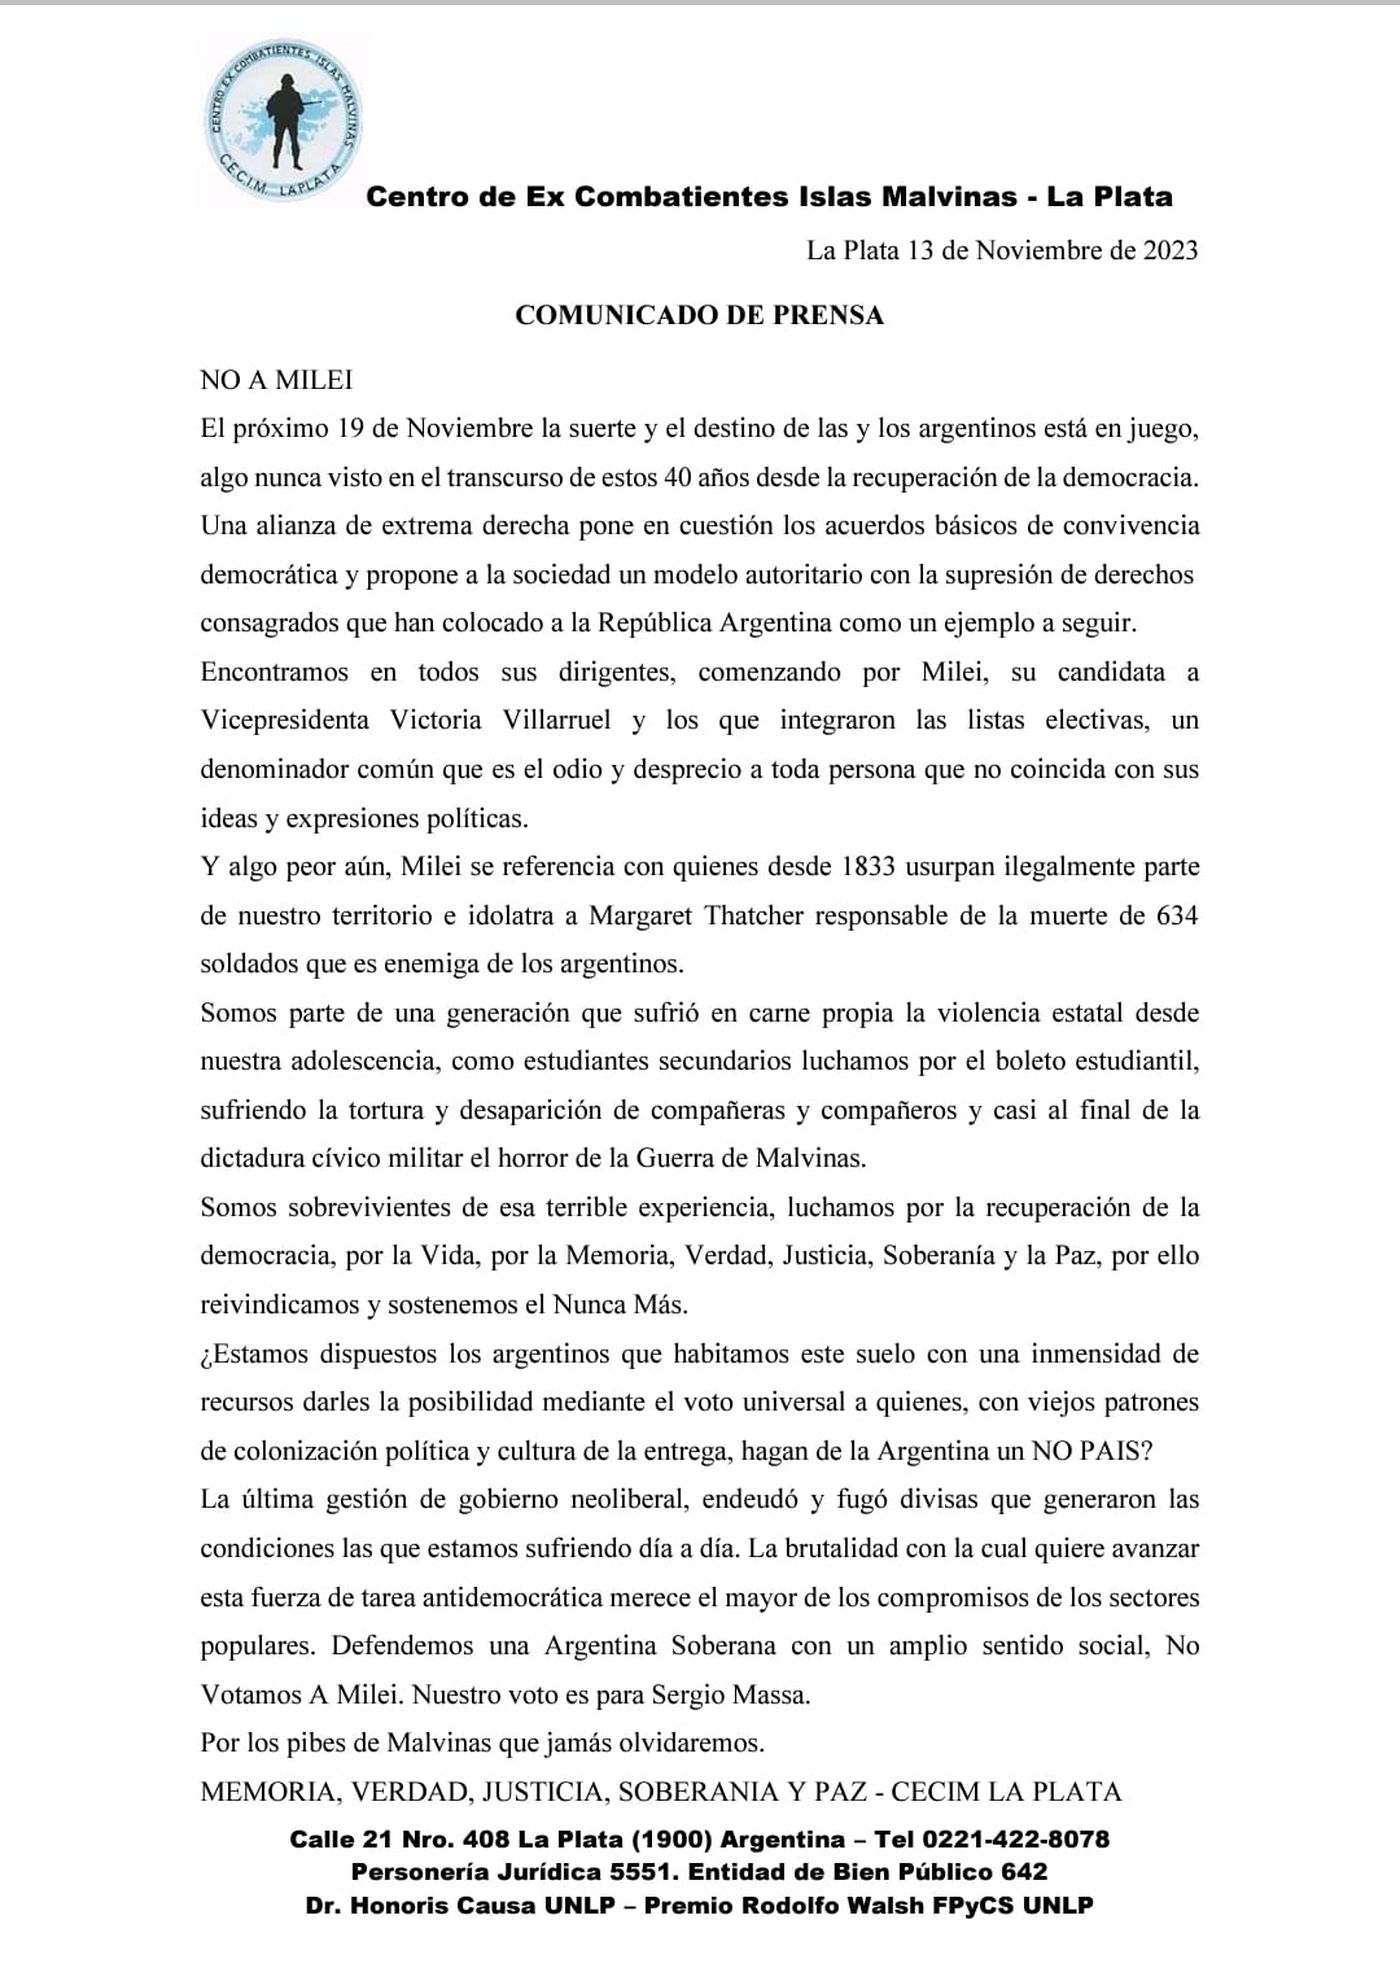 El comunicado de prensa de CECIM La Plata.